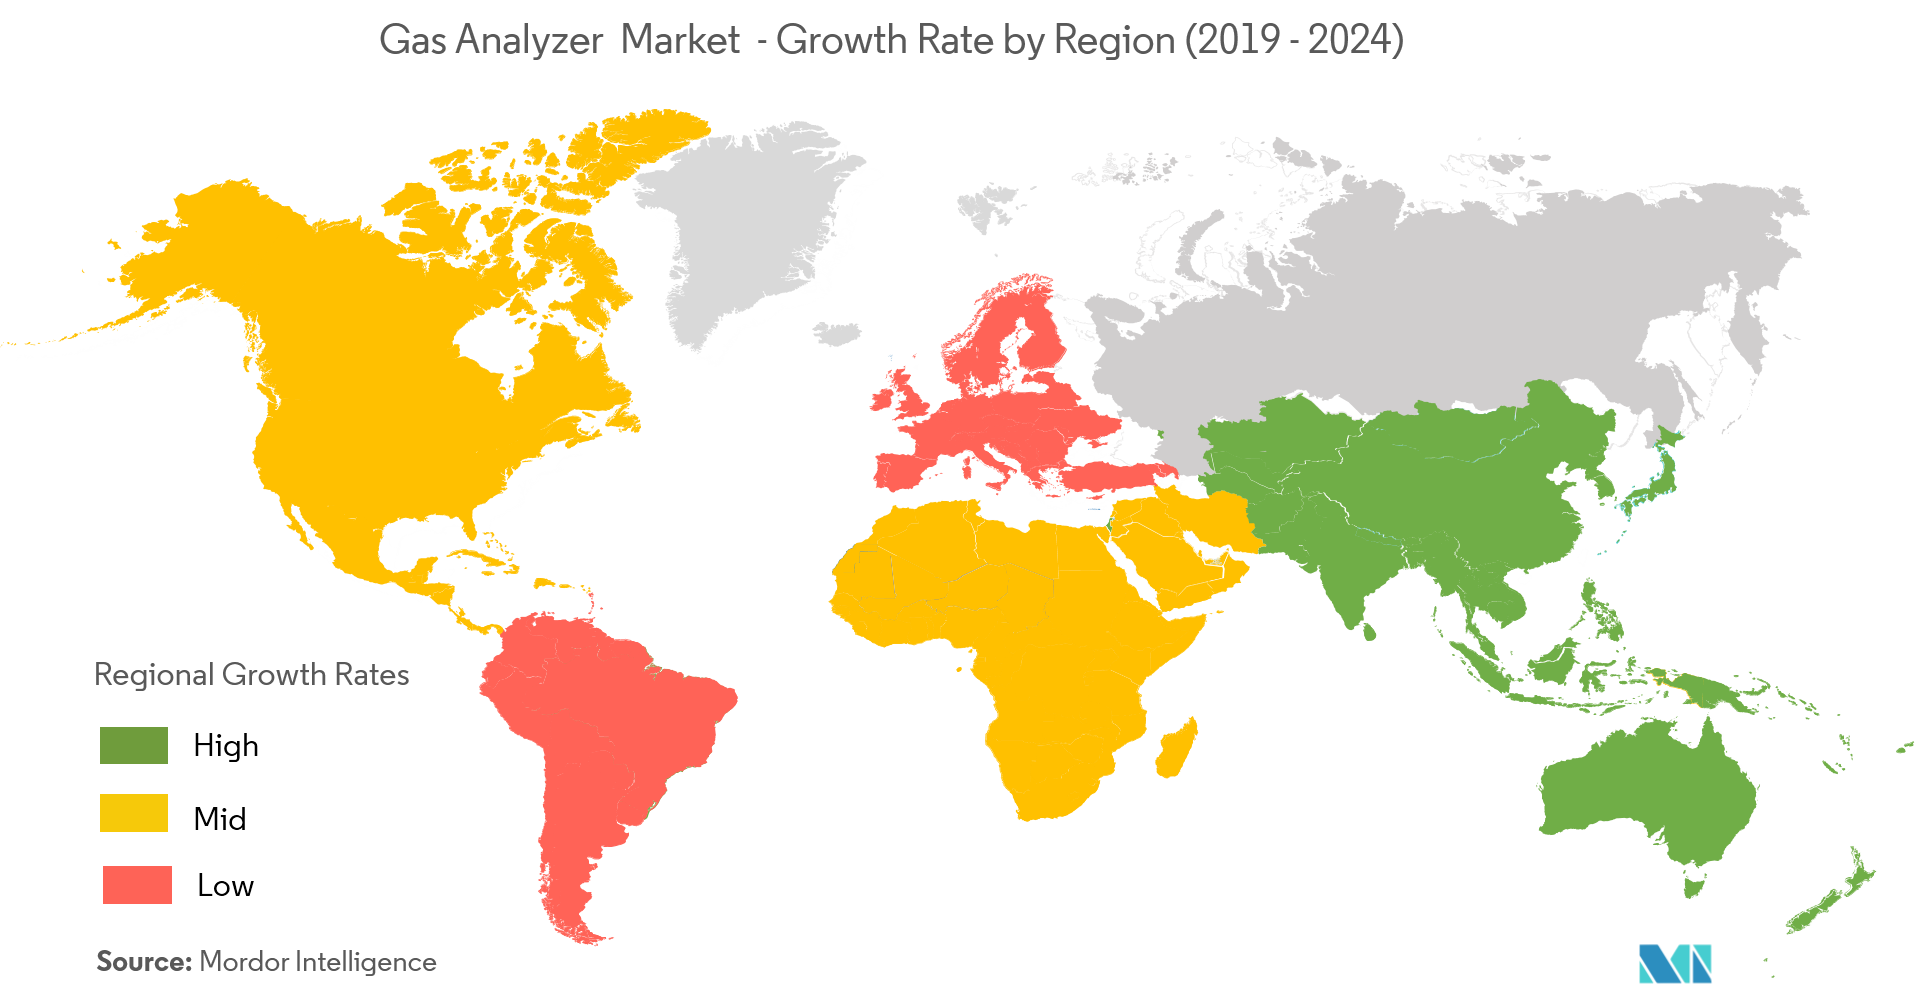  Gas Analyzer Market Growth by Region